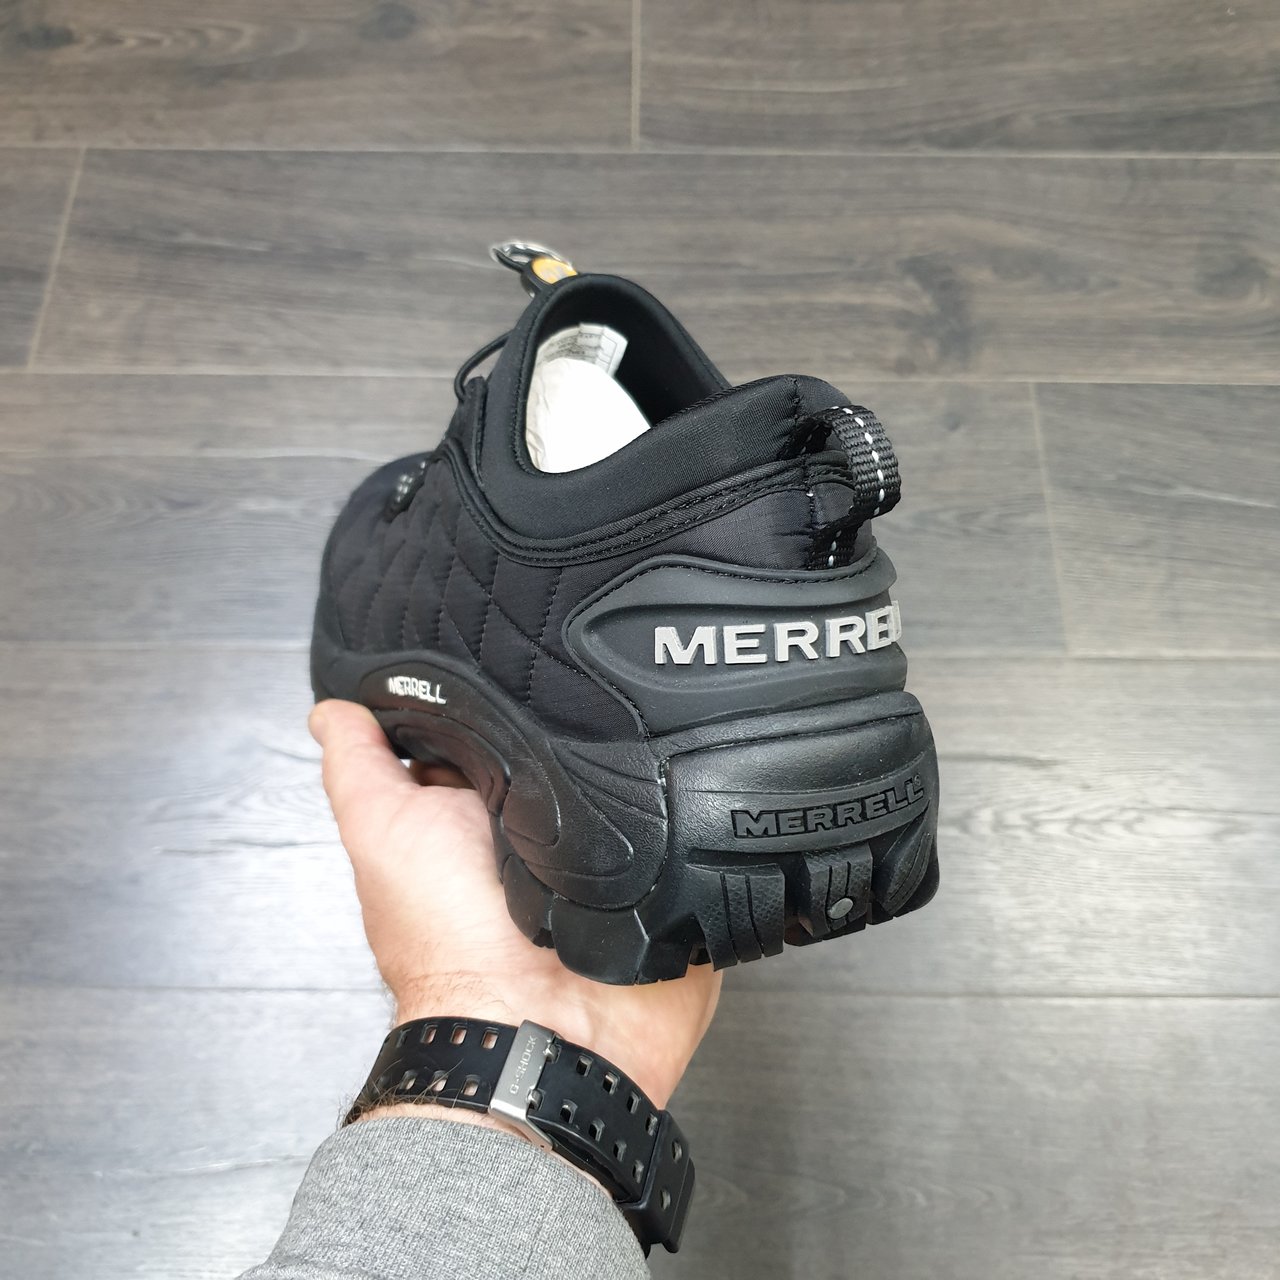 Dare Shinkan Samle Купить мужские и подростковые кроссовки Меррелл | Merrell Ice Cap Moc 2  Black в интернет-магазине в Минске